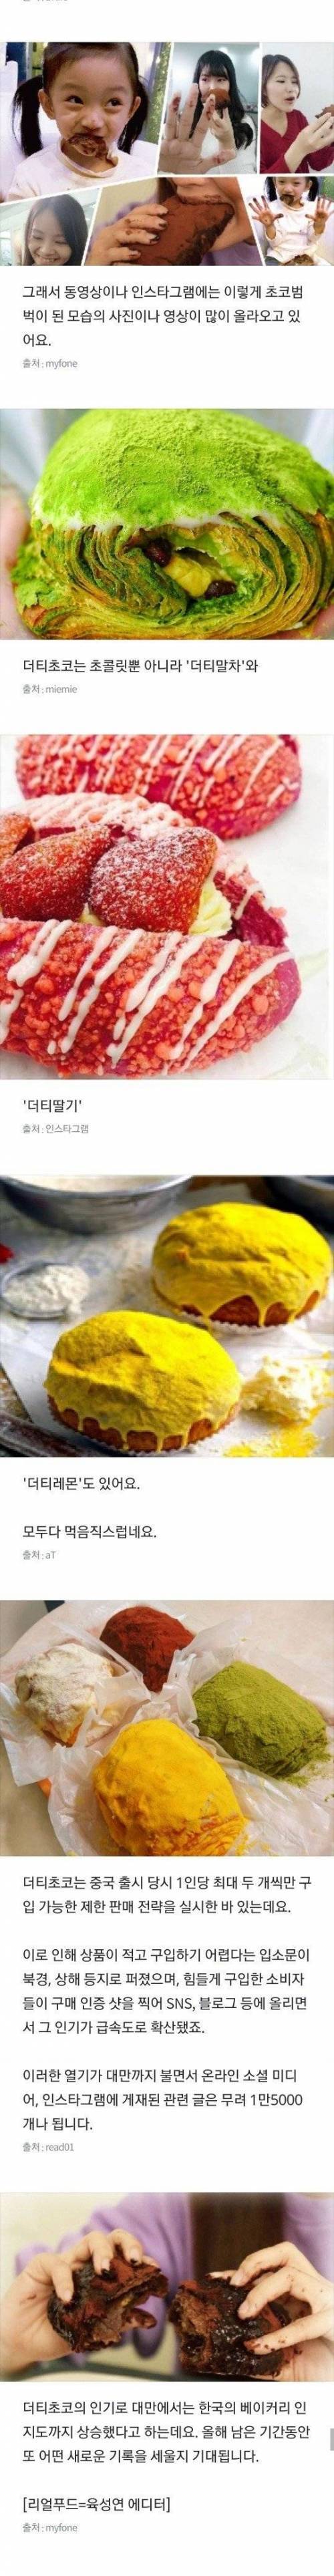 [스압] 중국과 대만에서 대박난 한국의 빵